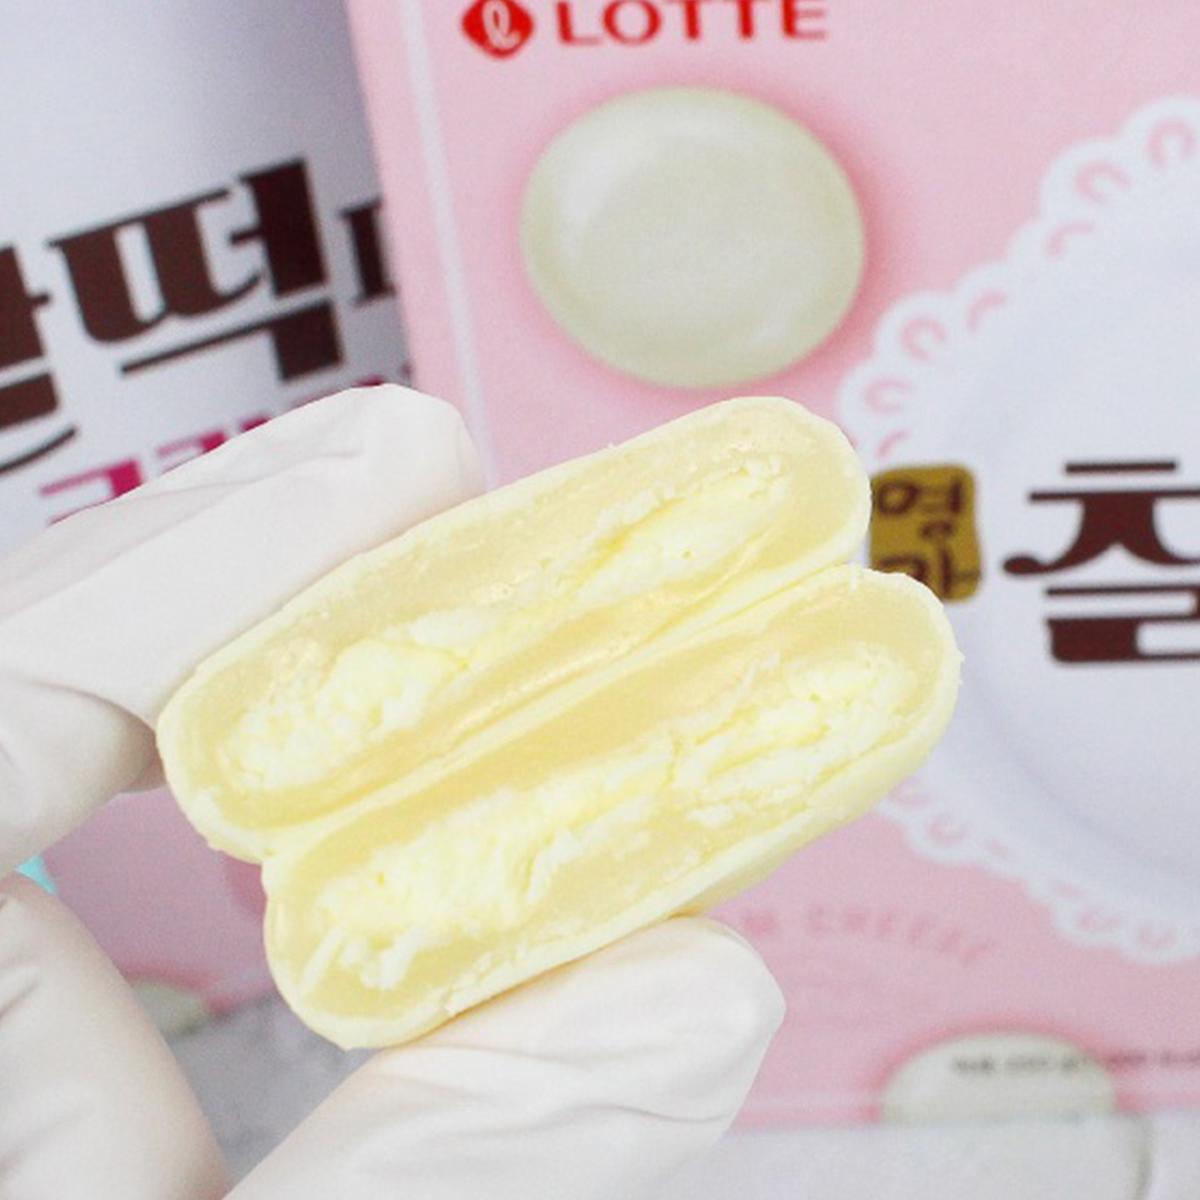 Myeongga Chaltteok Pie Cream Cheese (10 packs) 